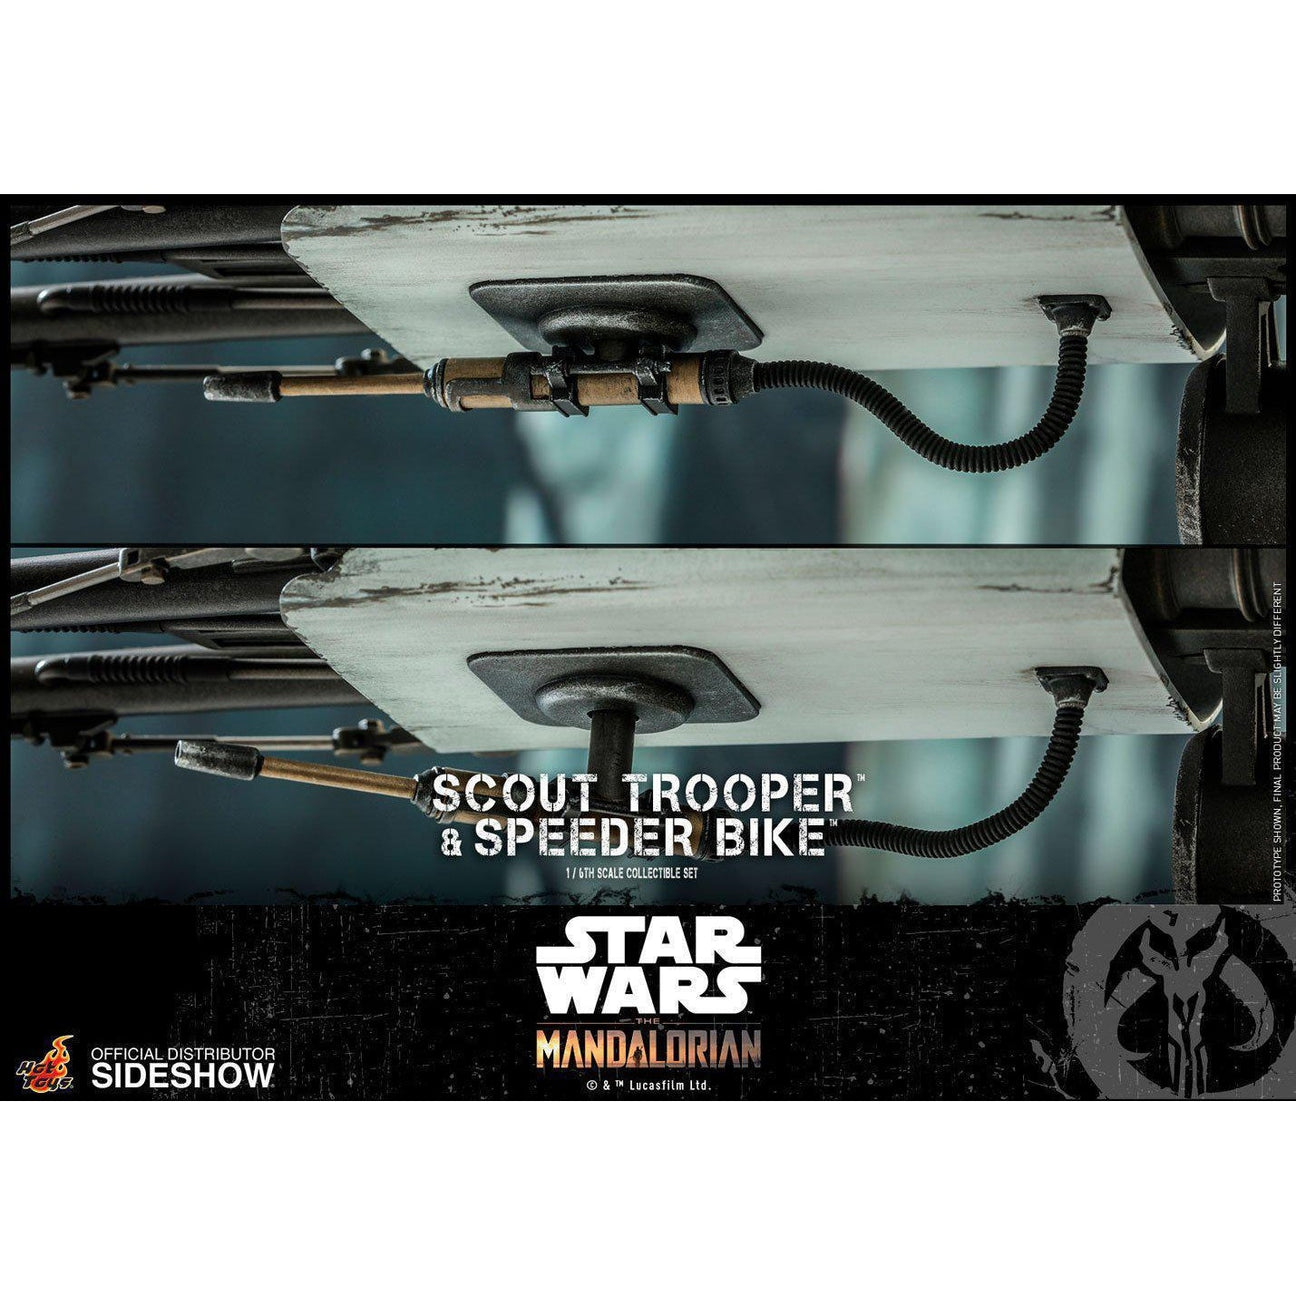 Star Wars: The Mandalorian - Scout Trooper and Speeder Bike 1:6 VORBESTELLUNG!-Actionfiguren-Hot Toys-mighty-underground